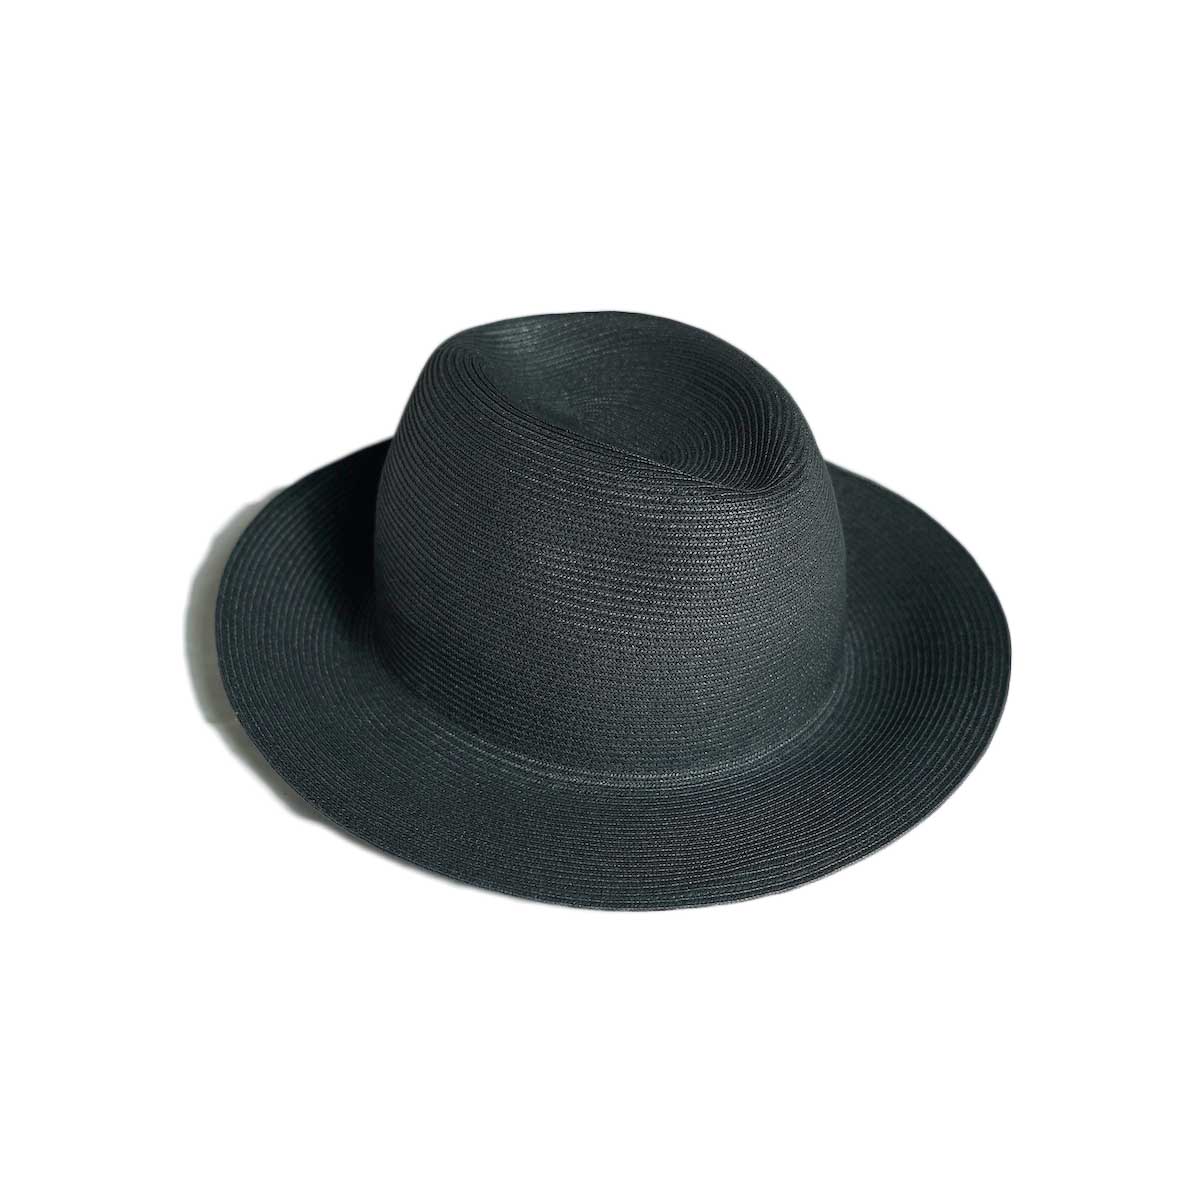 KIJIMA TAKAYUKI / PAPER BRAID SOFT HAT (Black)